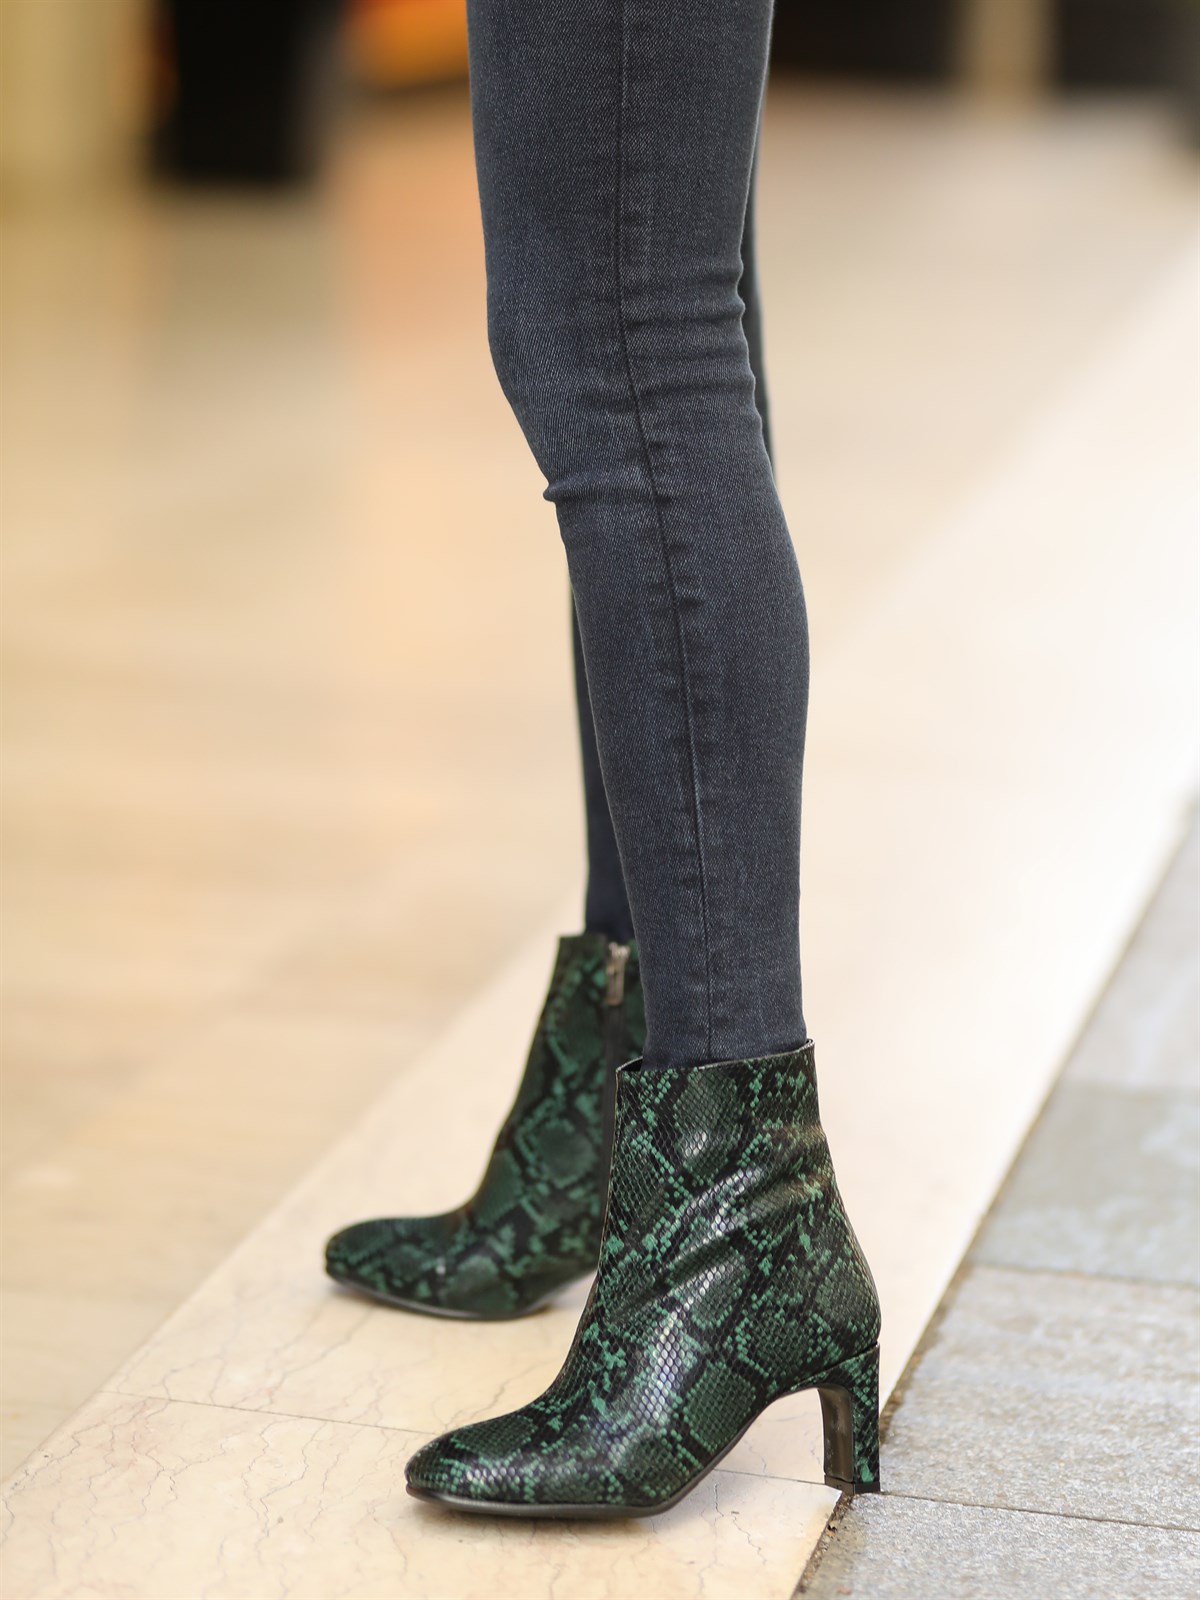 Mypoppishoes / Yeşil Yılan Desenli Kadın 7 cm Topuklu Ayakkabı Adrian